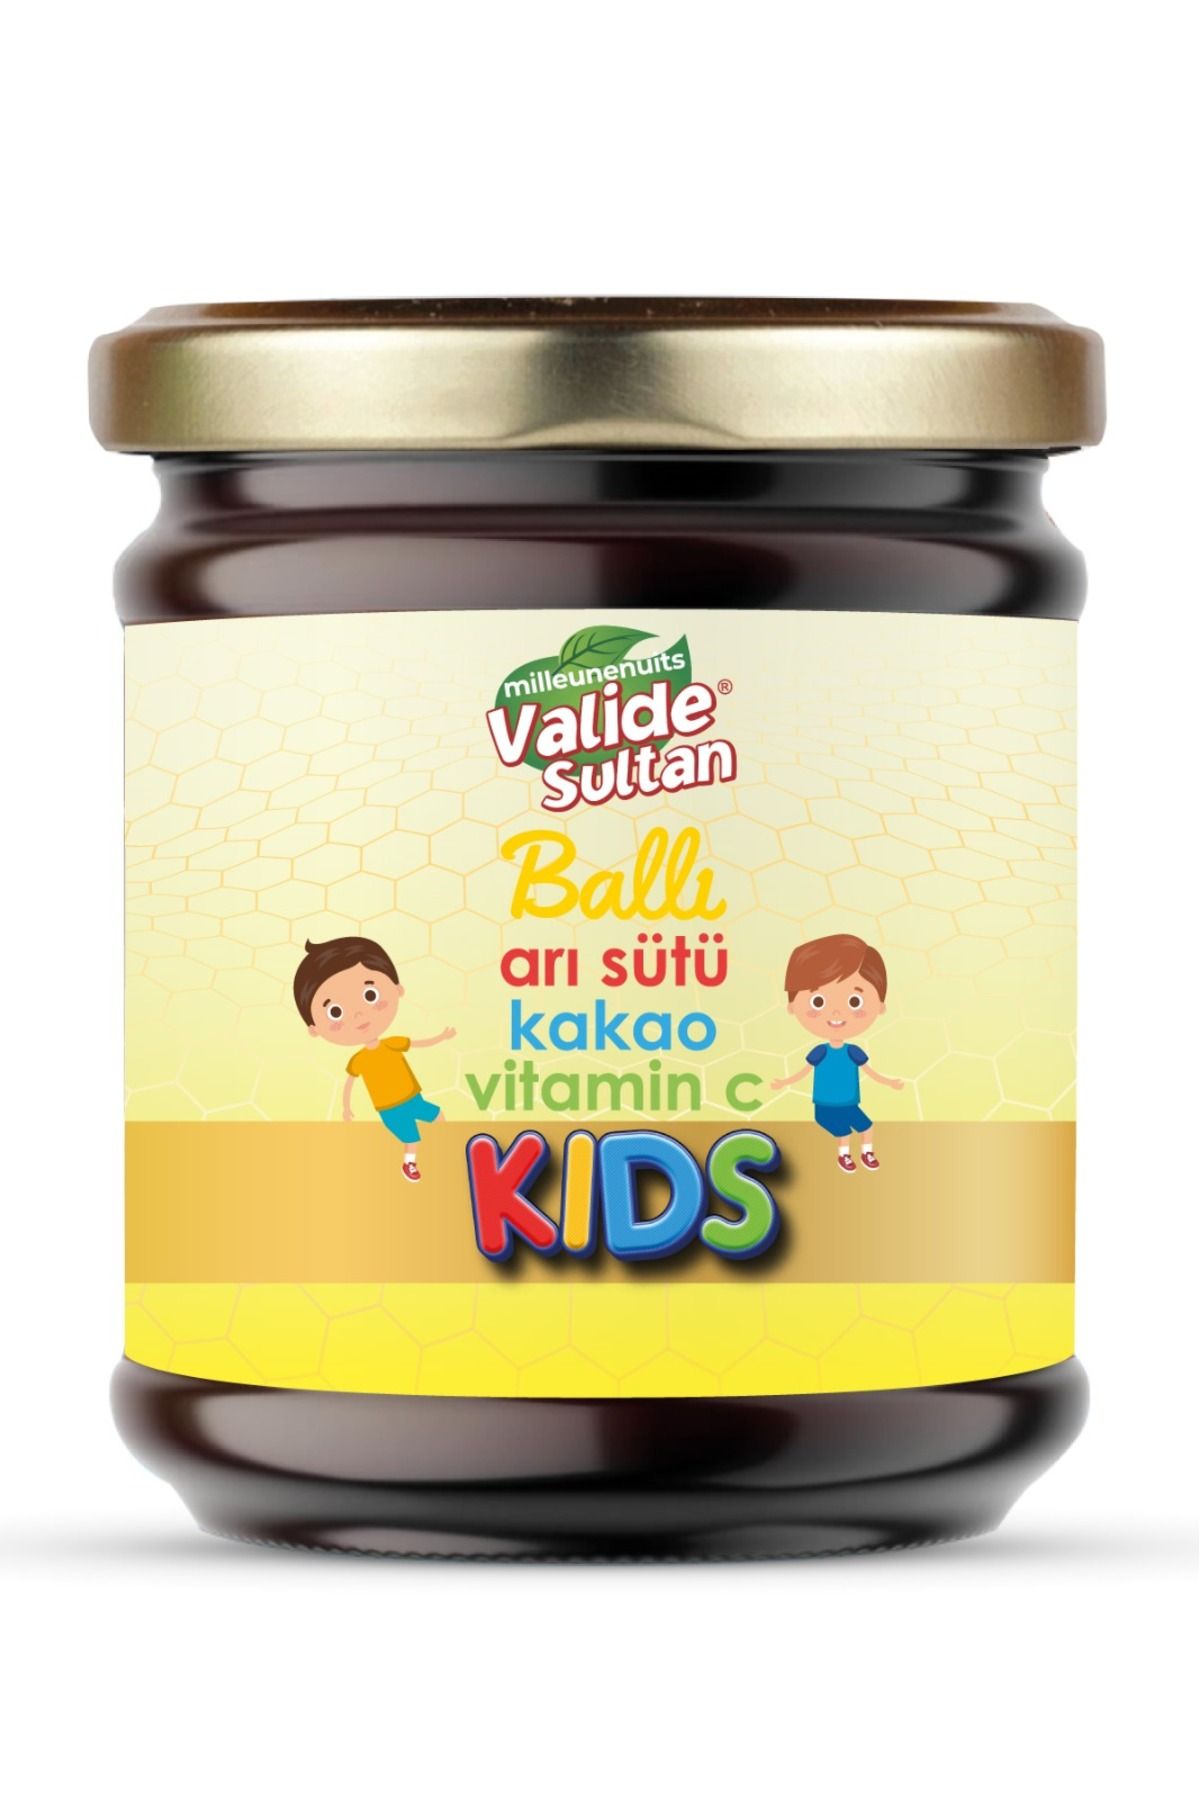 valide sultan Kids Çocuklar İçin Özel Ballı Arı Sütü Kakao Pekmez Ve Vitamin C Katkılı Macun TYC00820109824